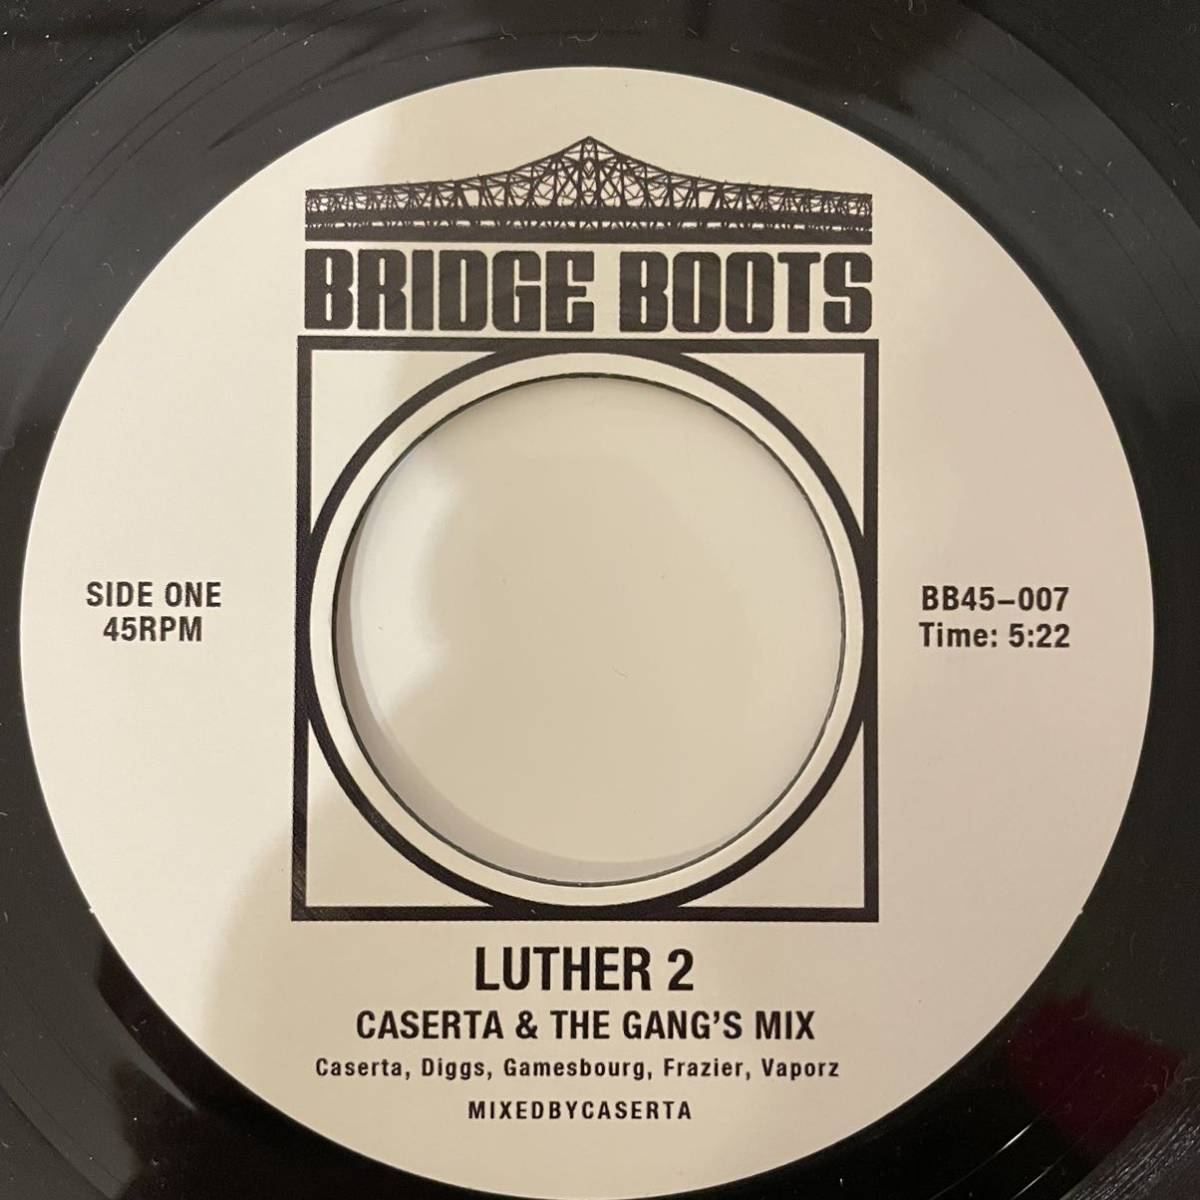 【7インチ レコード】Caserta 「Luther 2」Bridge Boots BB45-007 / LUTHER VANDROSS「I'D RATHER」のremix_画像1